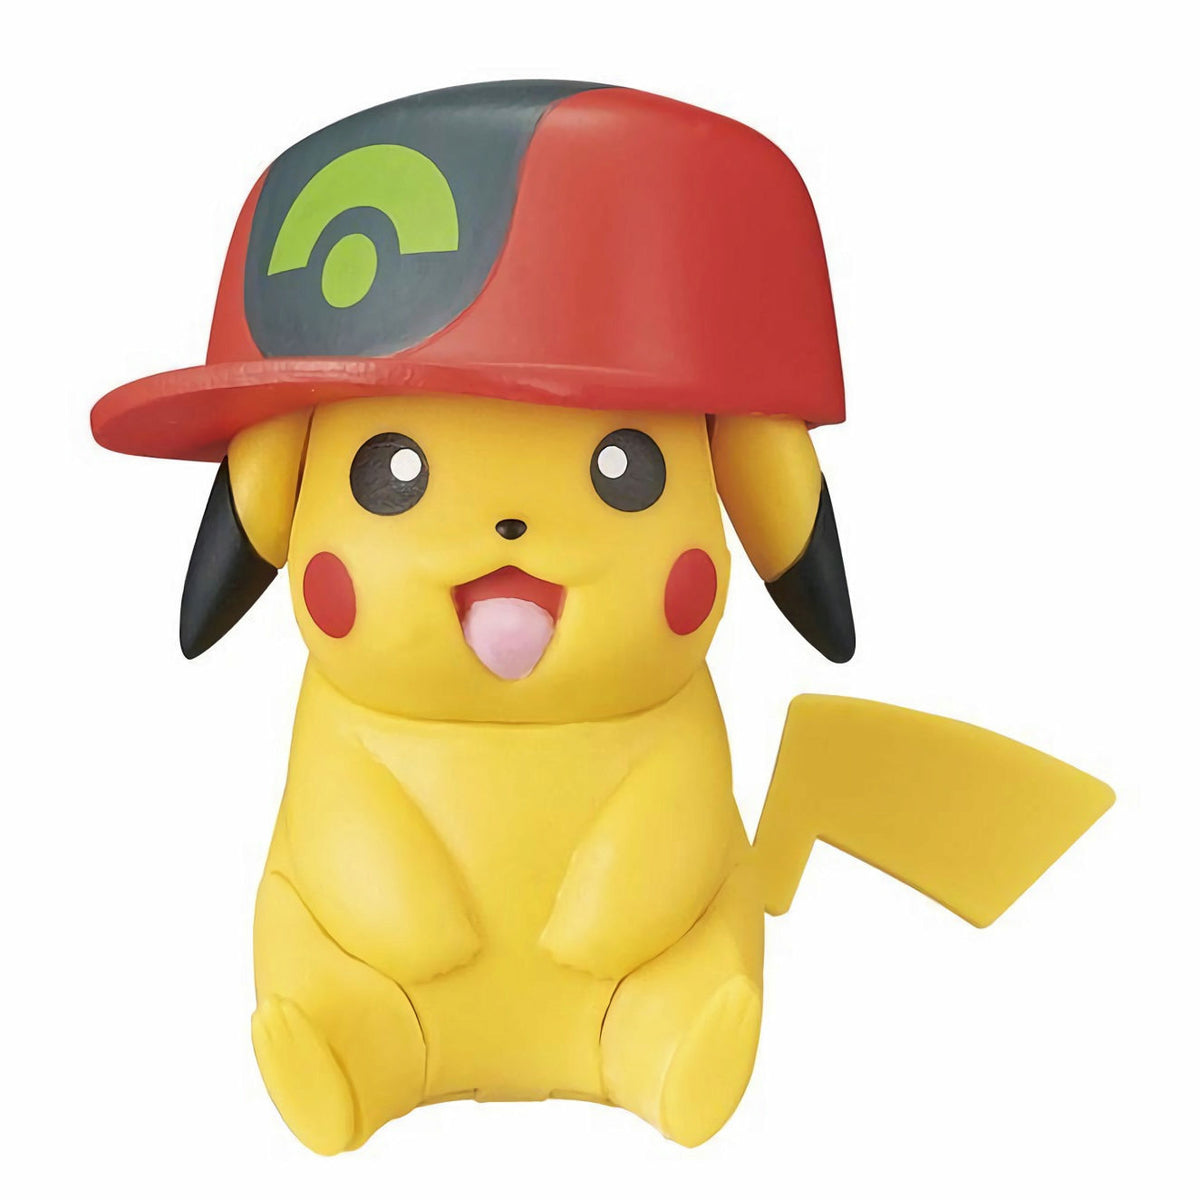 3D Puzzle: Pokemon Pikachu